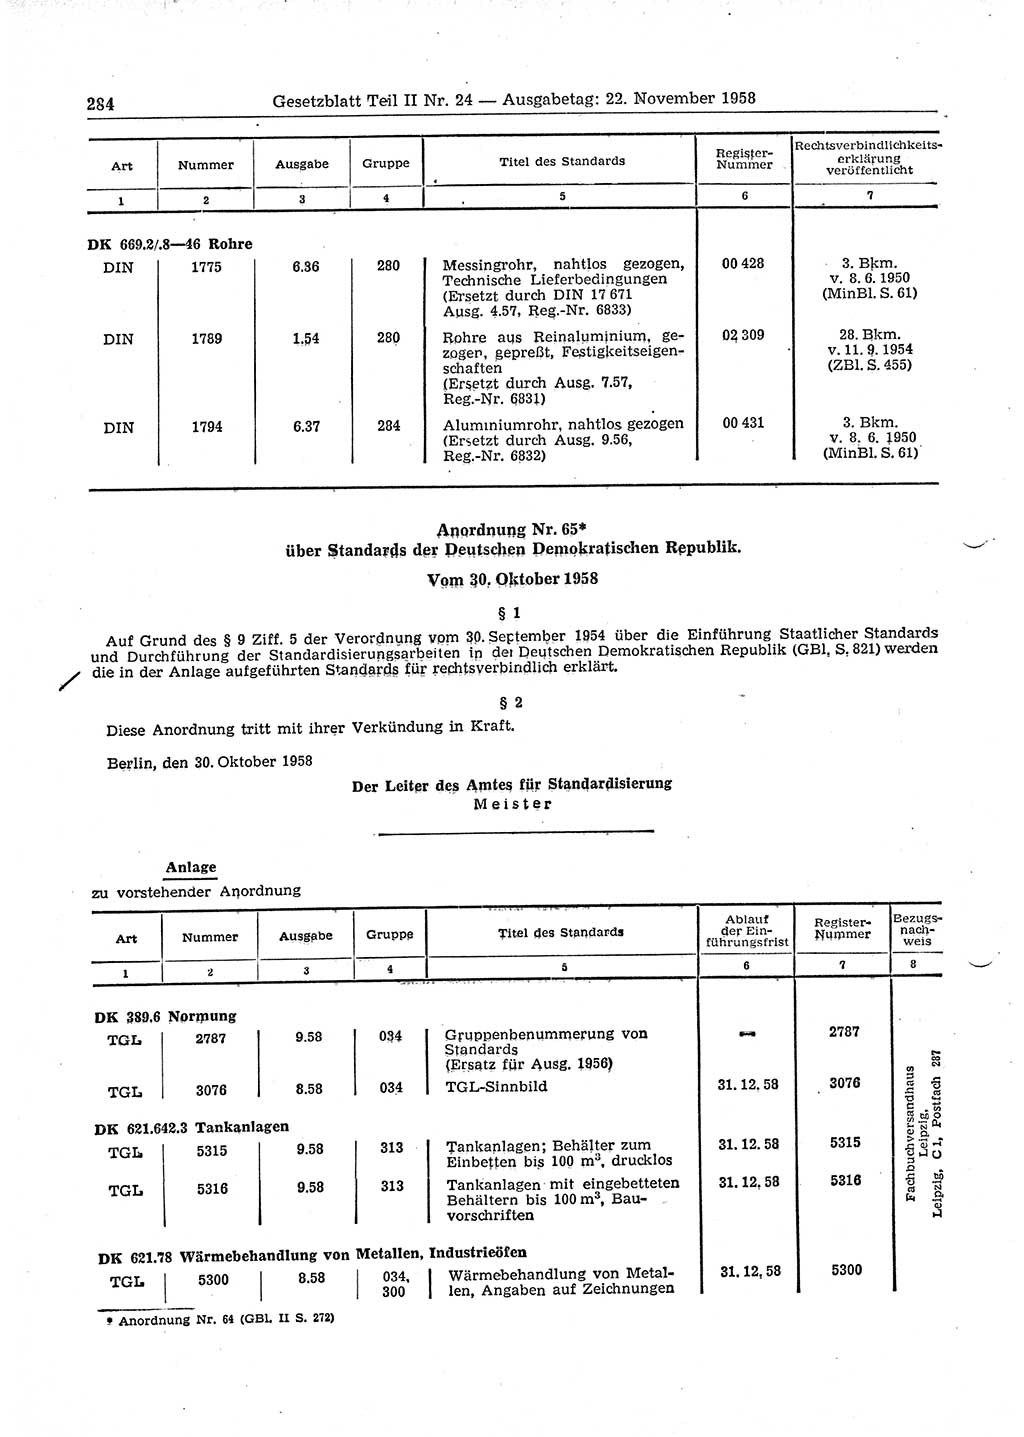 Gesetzblatt (GBl.) der Deutschen Demokratischen Republik (DDR) Teil ⅠⅠ 1958, Seite 284 (GBl. DDR ⅠⅠ 1958, S. 284)